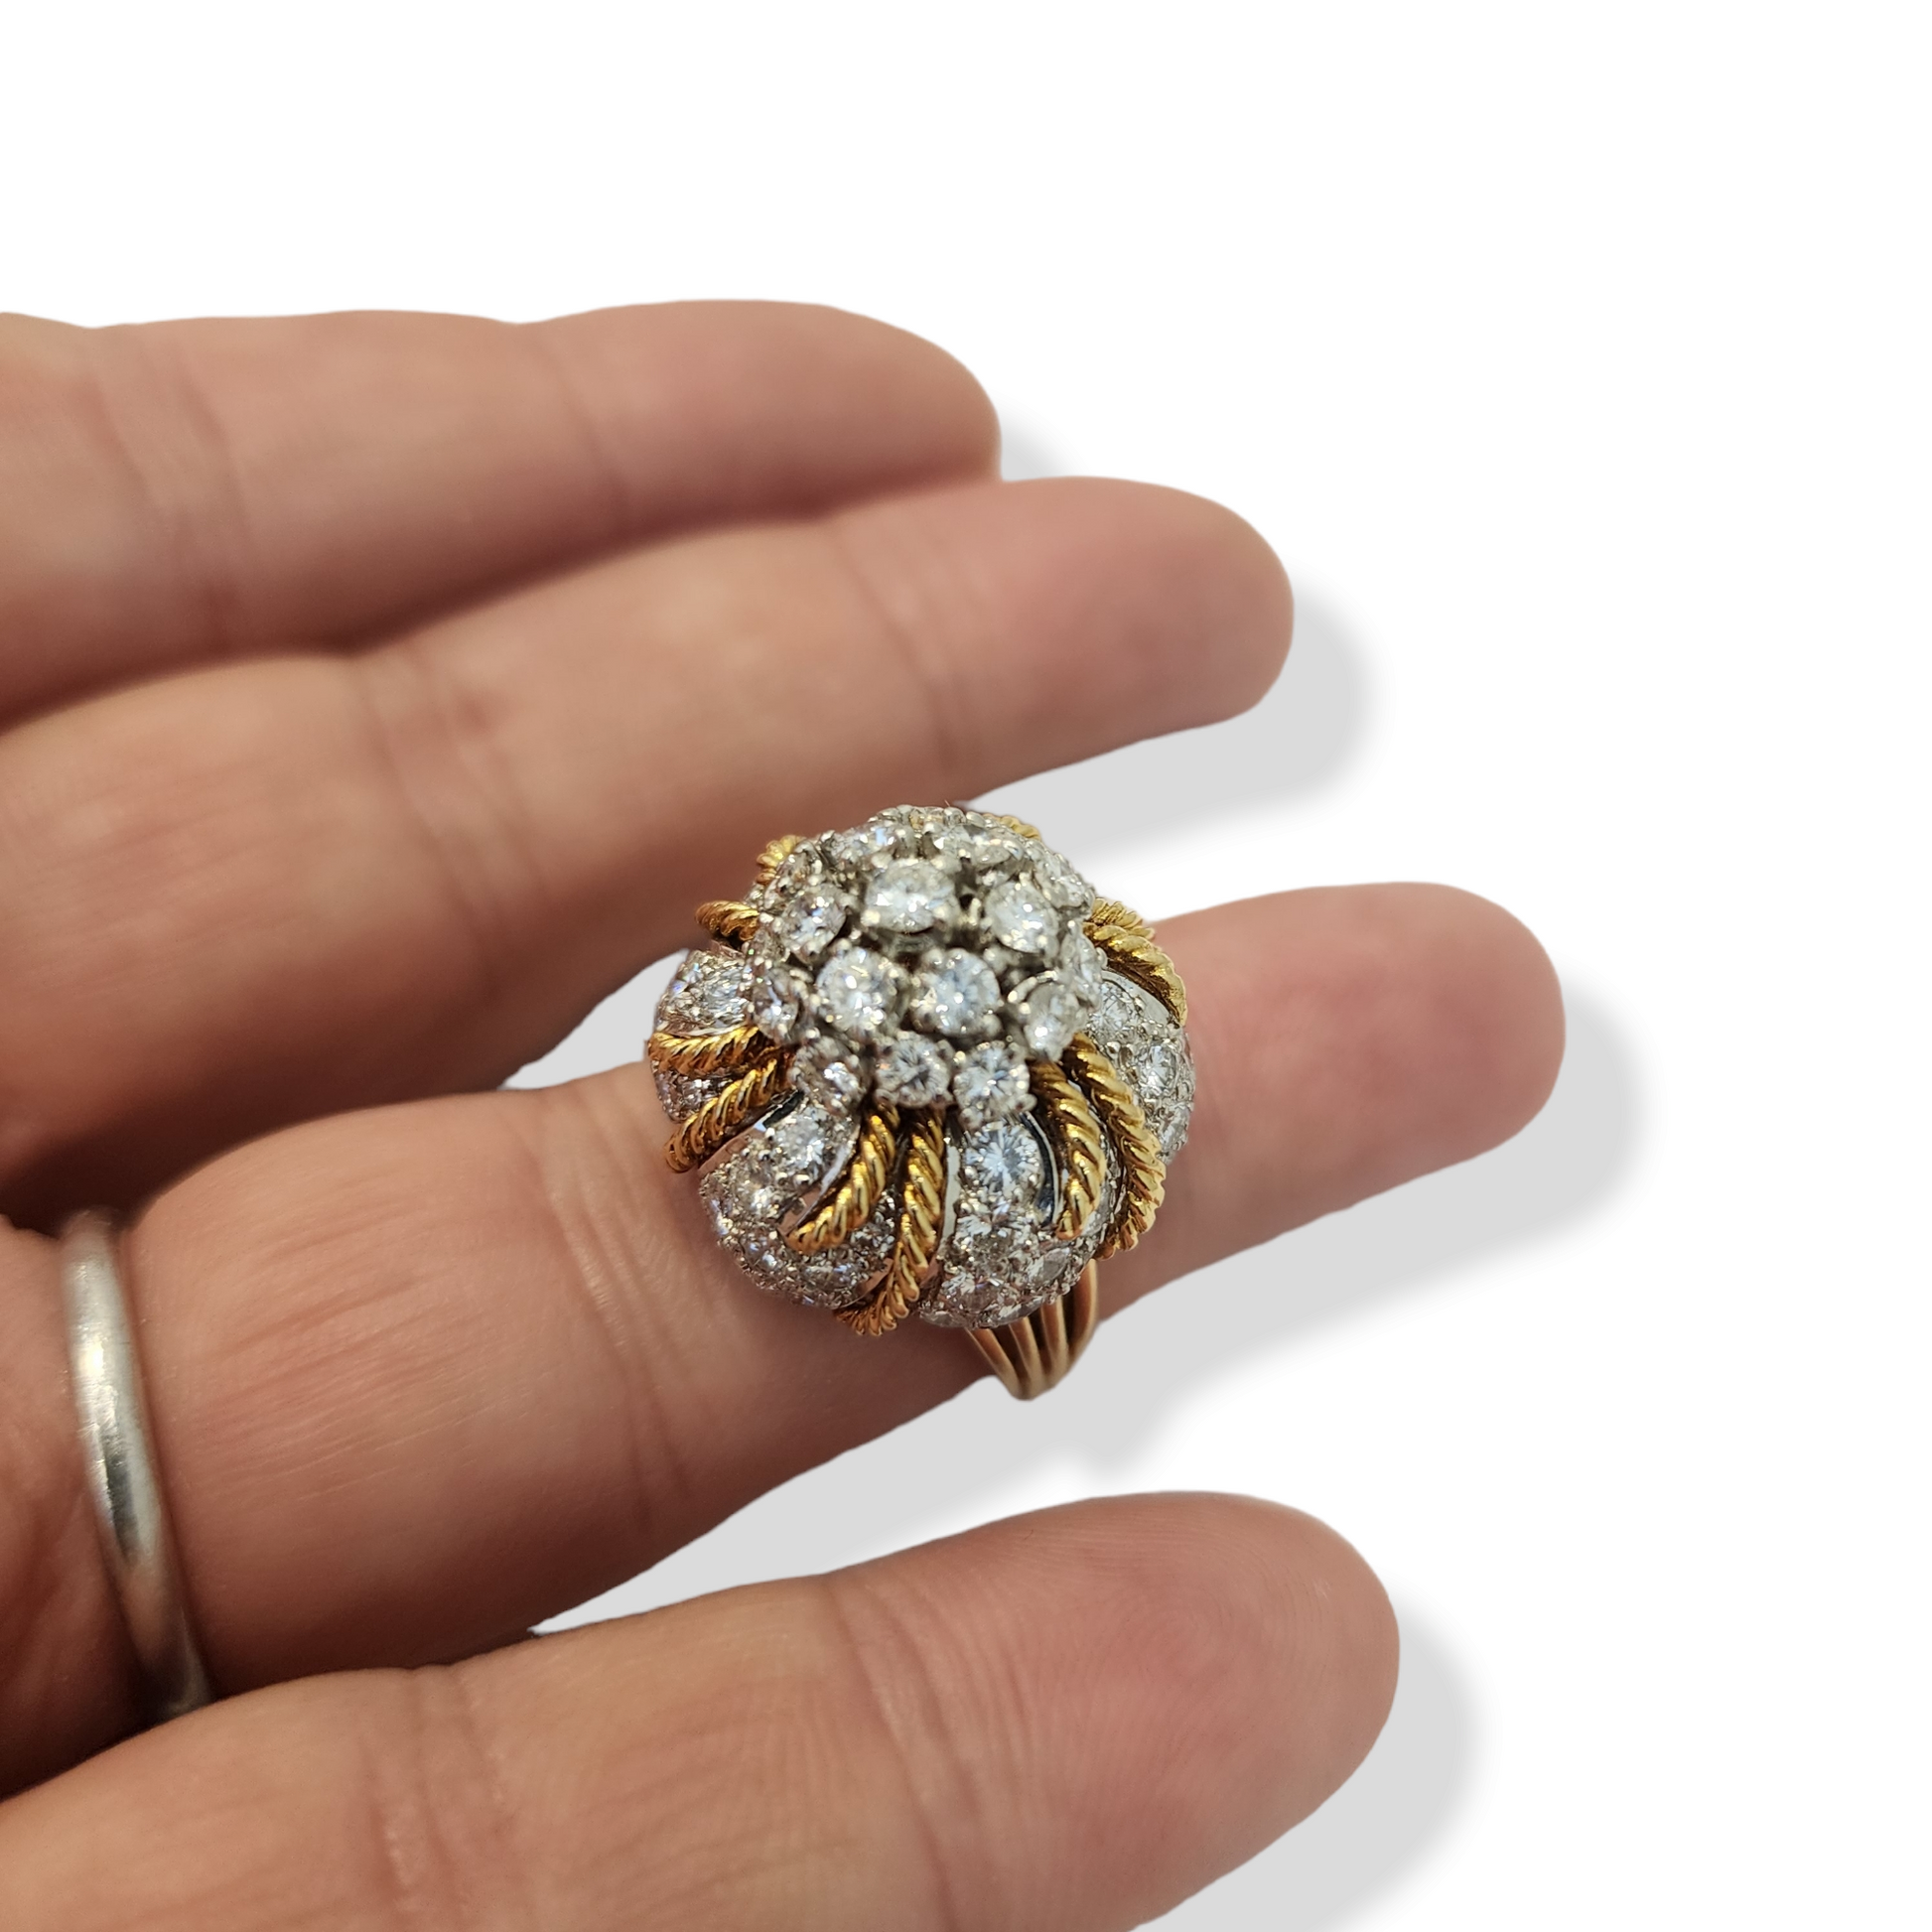 1960s 18KT Yellow Gold Diamond Domed Ring on finger